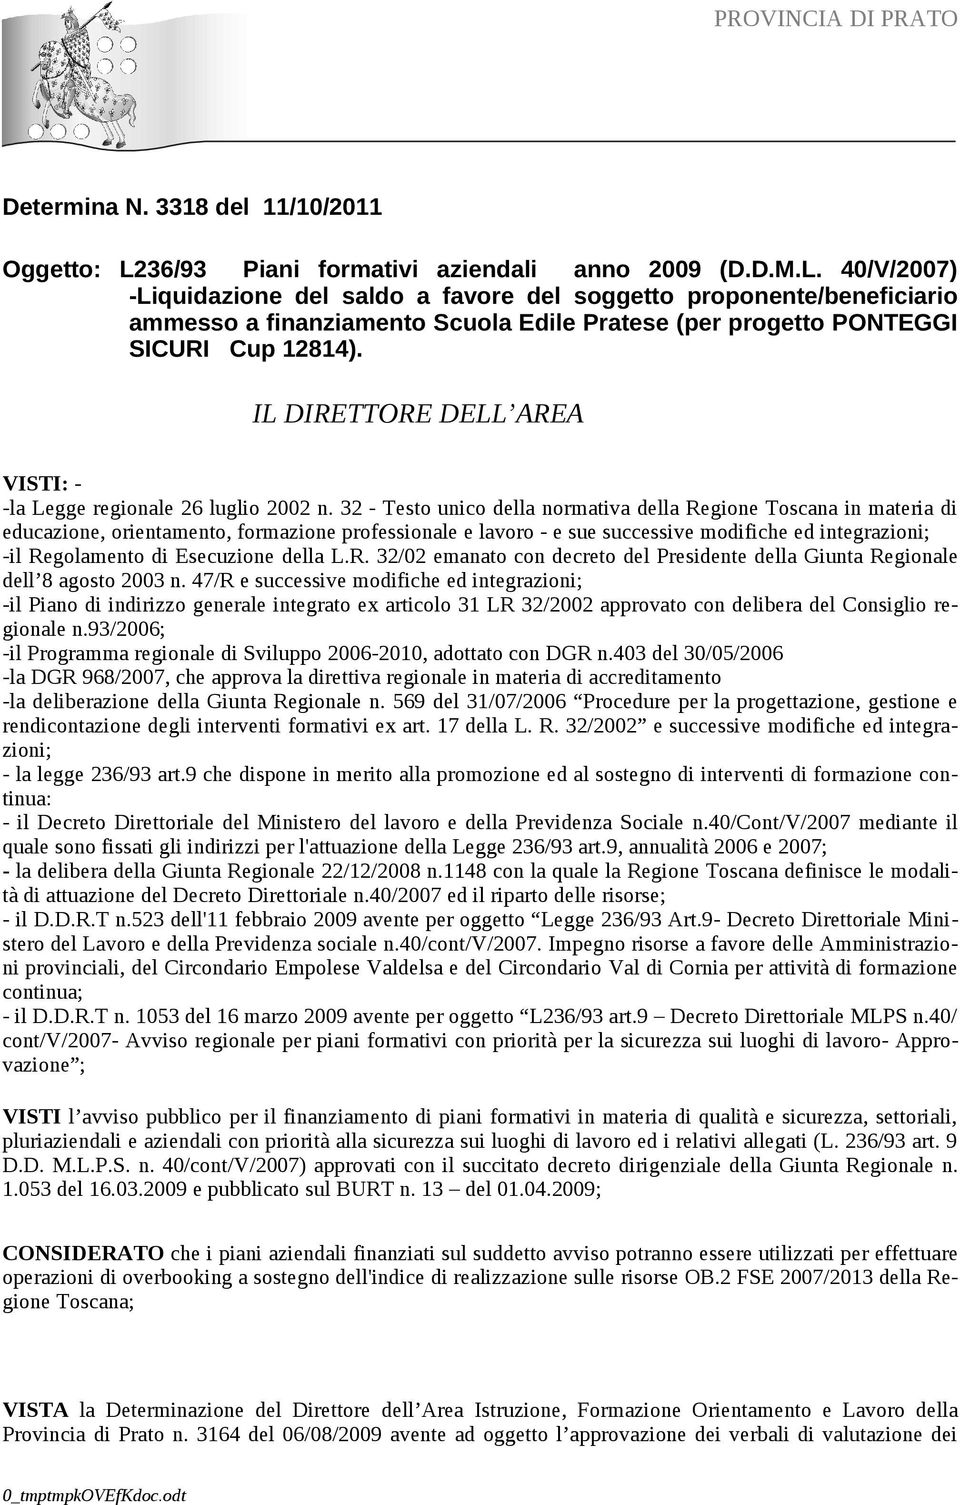 40/V/2007) -Liquidazione del saldo a favore del soggetto proponente/beneficiario ammesso a finanziamento Scuola Edile Pratese (per progetto PONTEGGI SICURI Cup 12814).